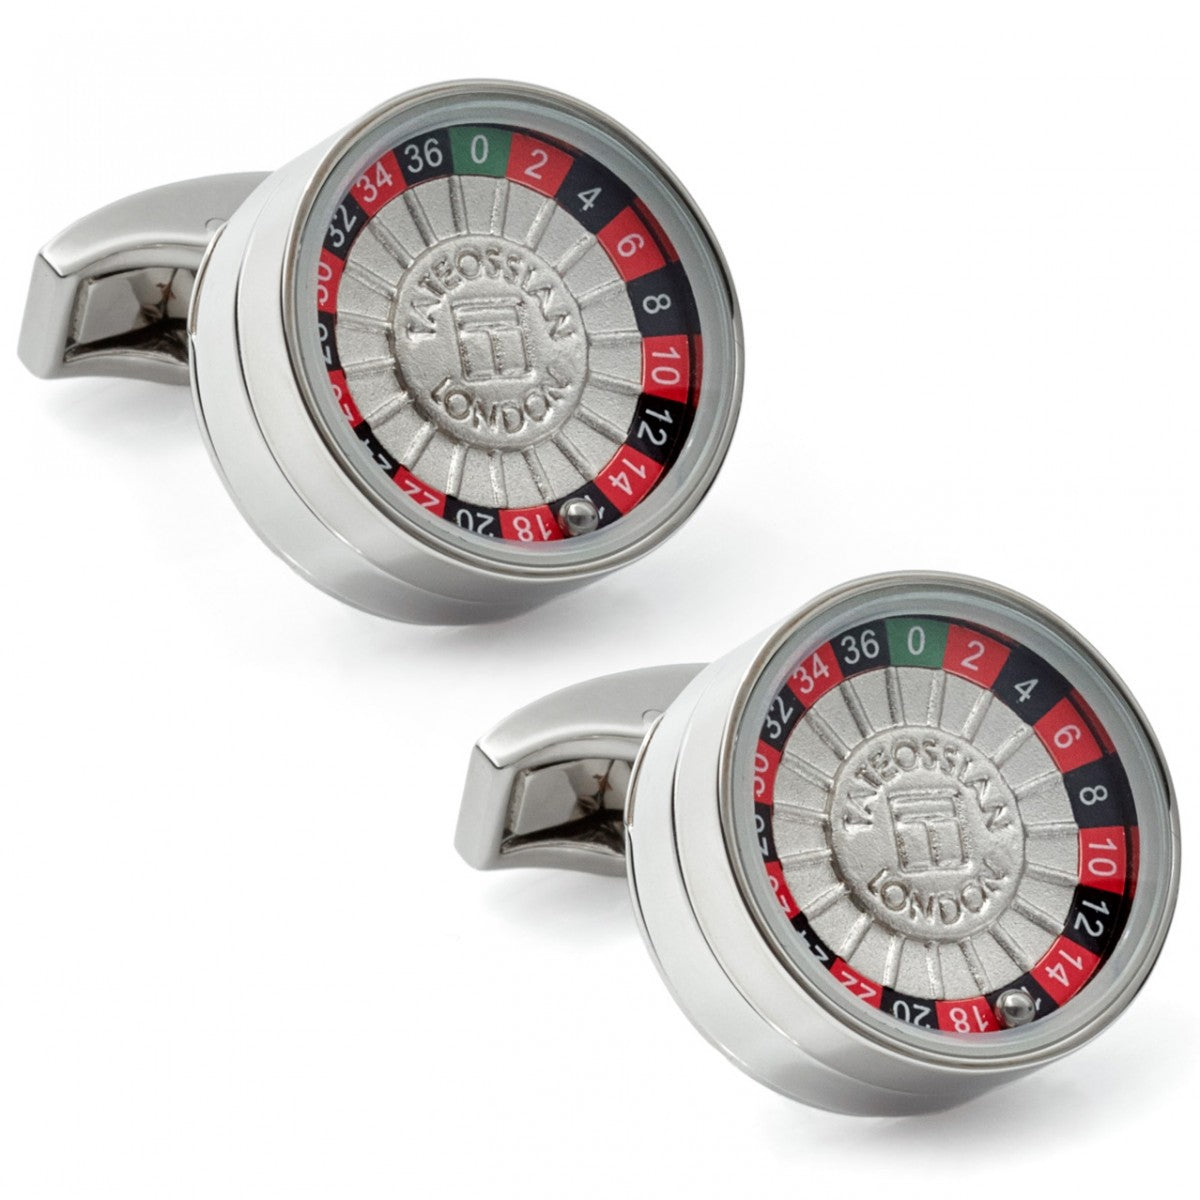 Tateossian Roulette Wheel Cufflinks